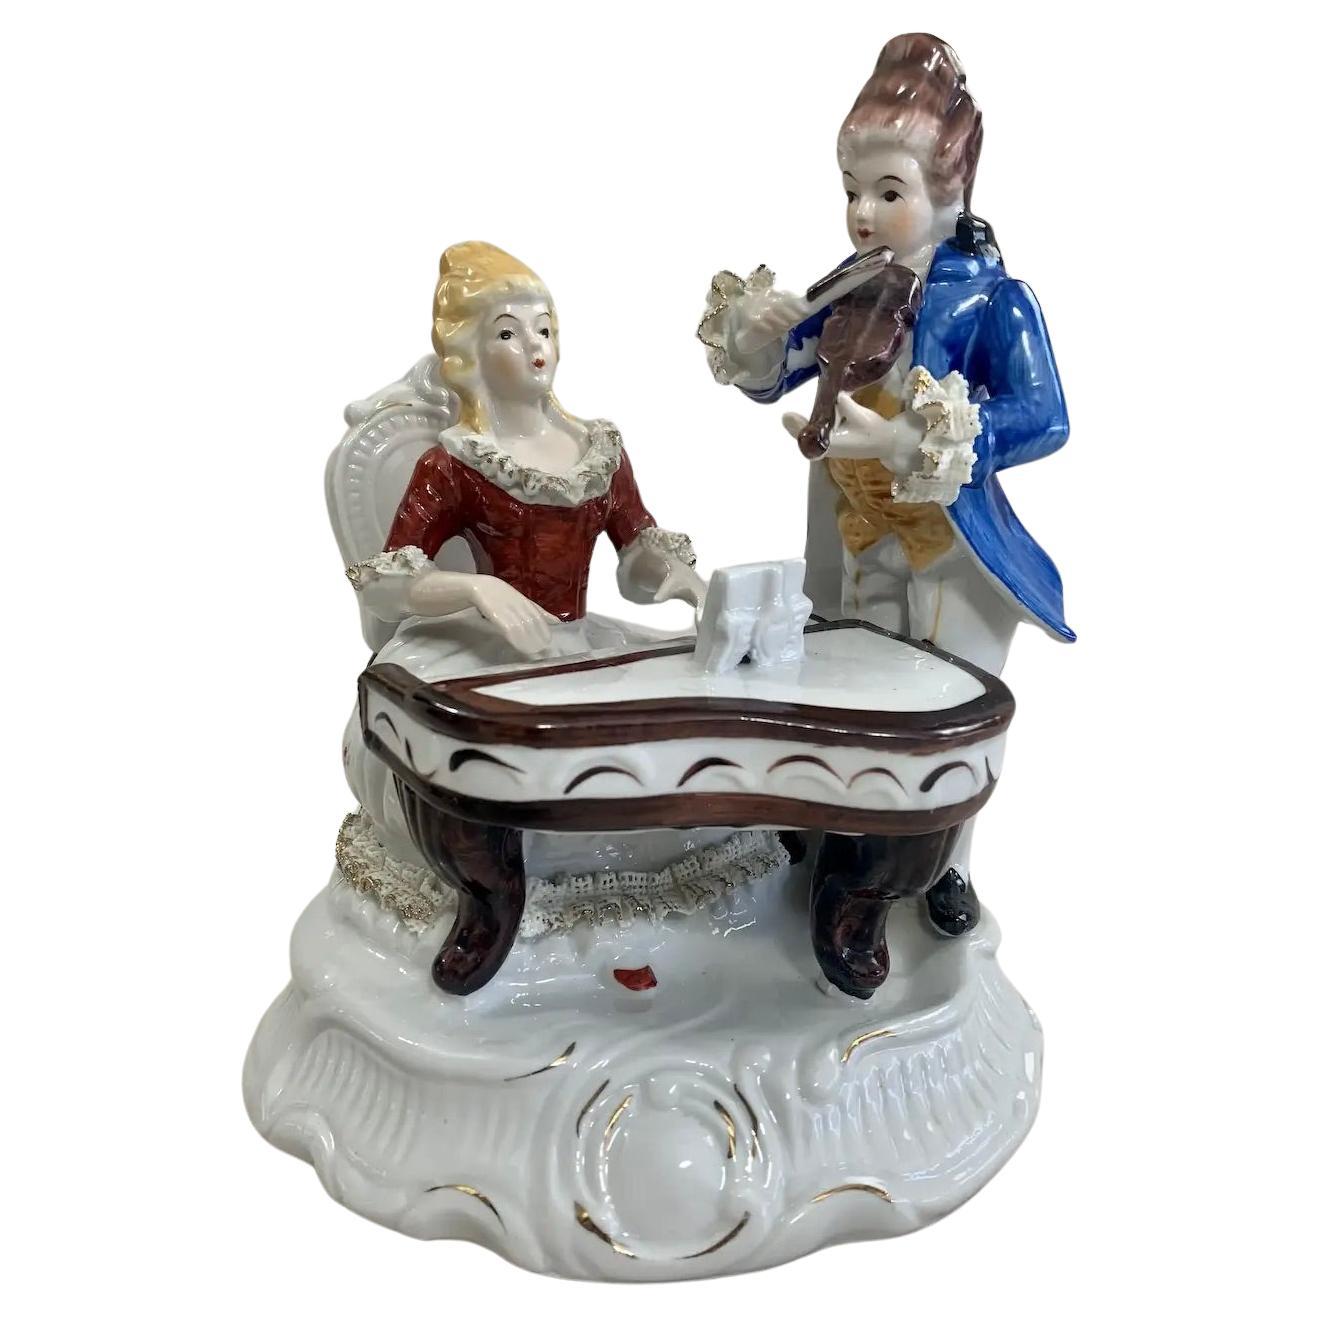 “The Romantic Duet” Porcelain Figurine For Sale